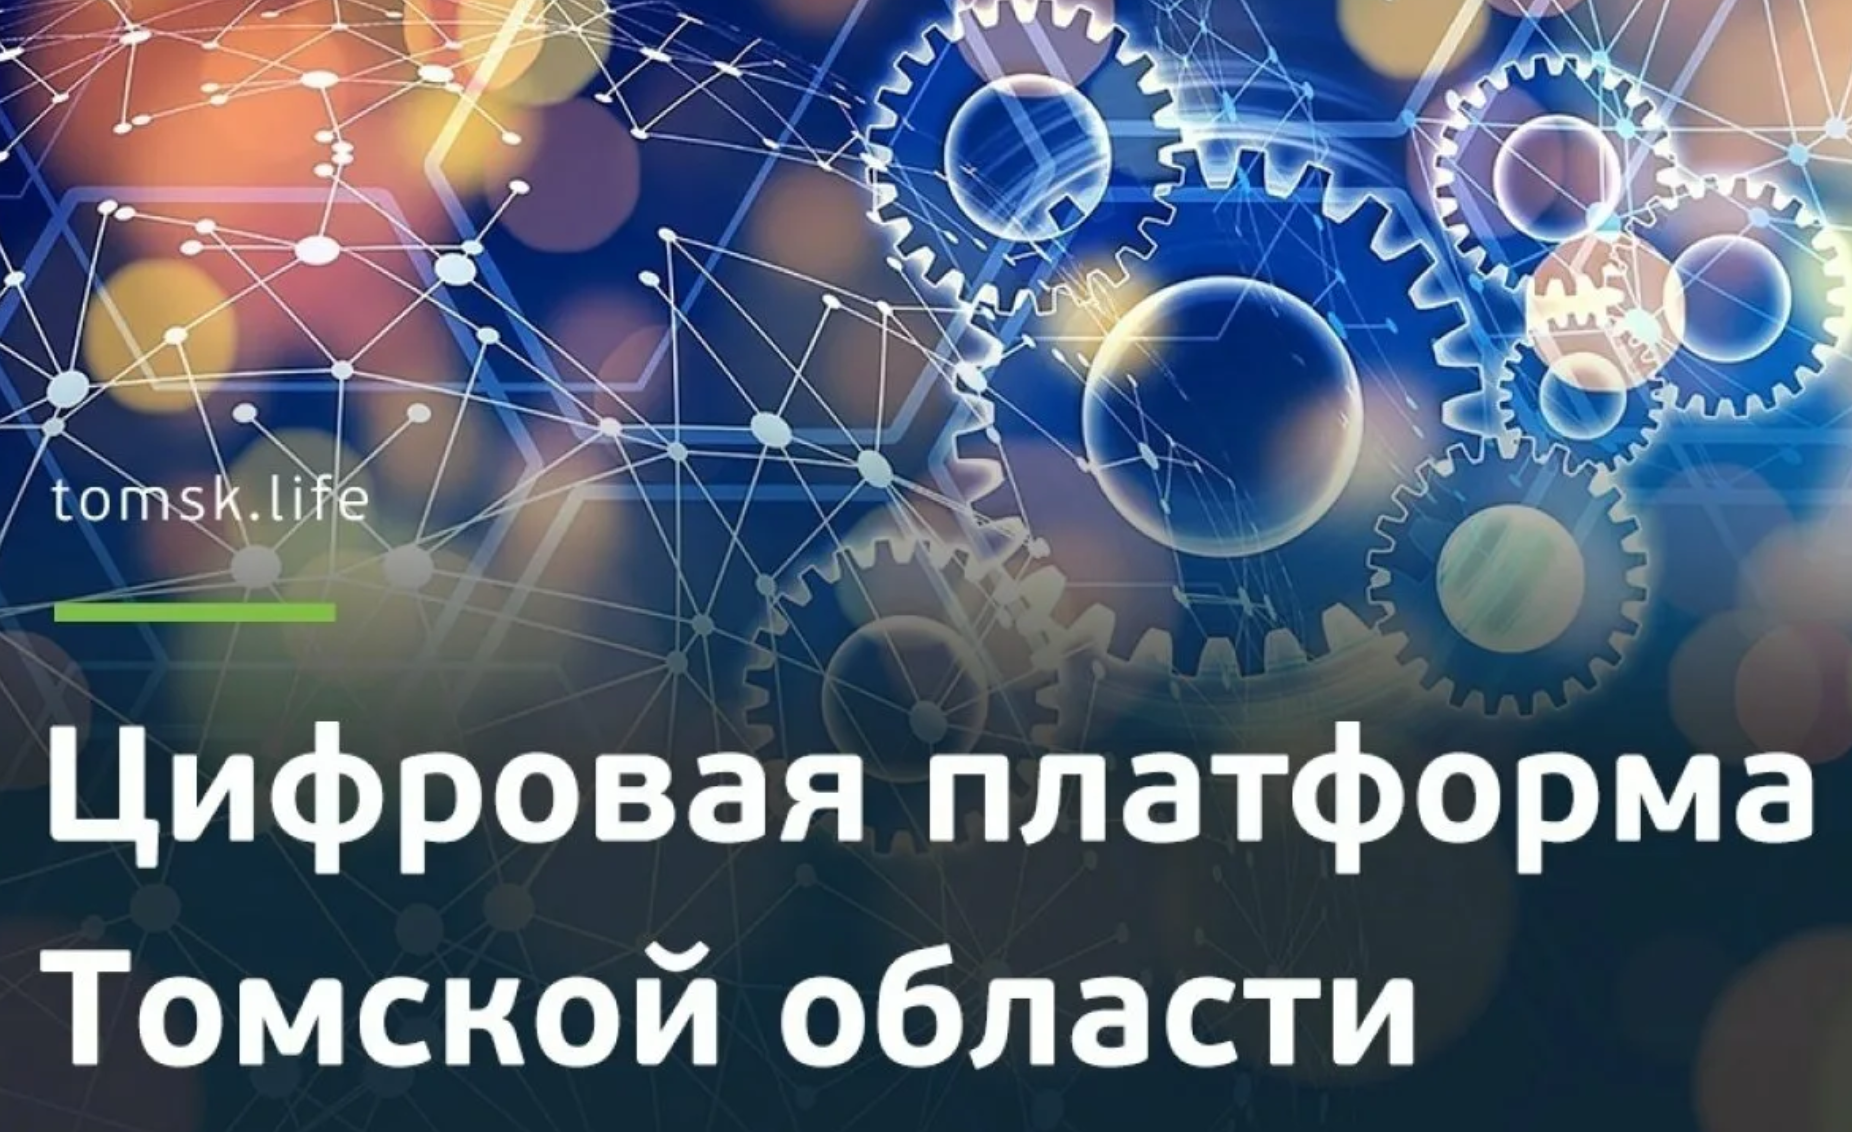 В 2020 году в Томской области создана единая информационная экосистема, взаимодействия граждан, бизнеса и государства.